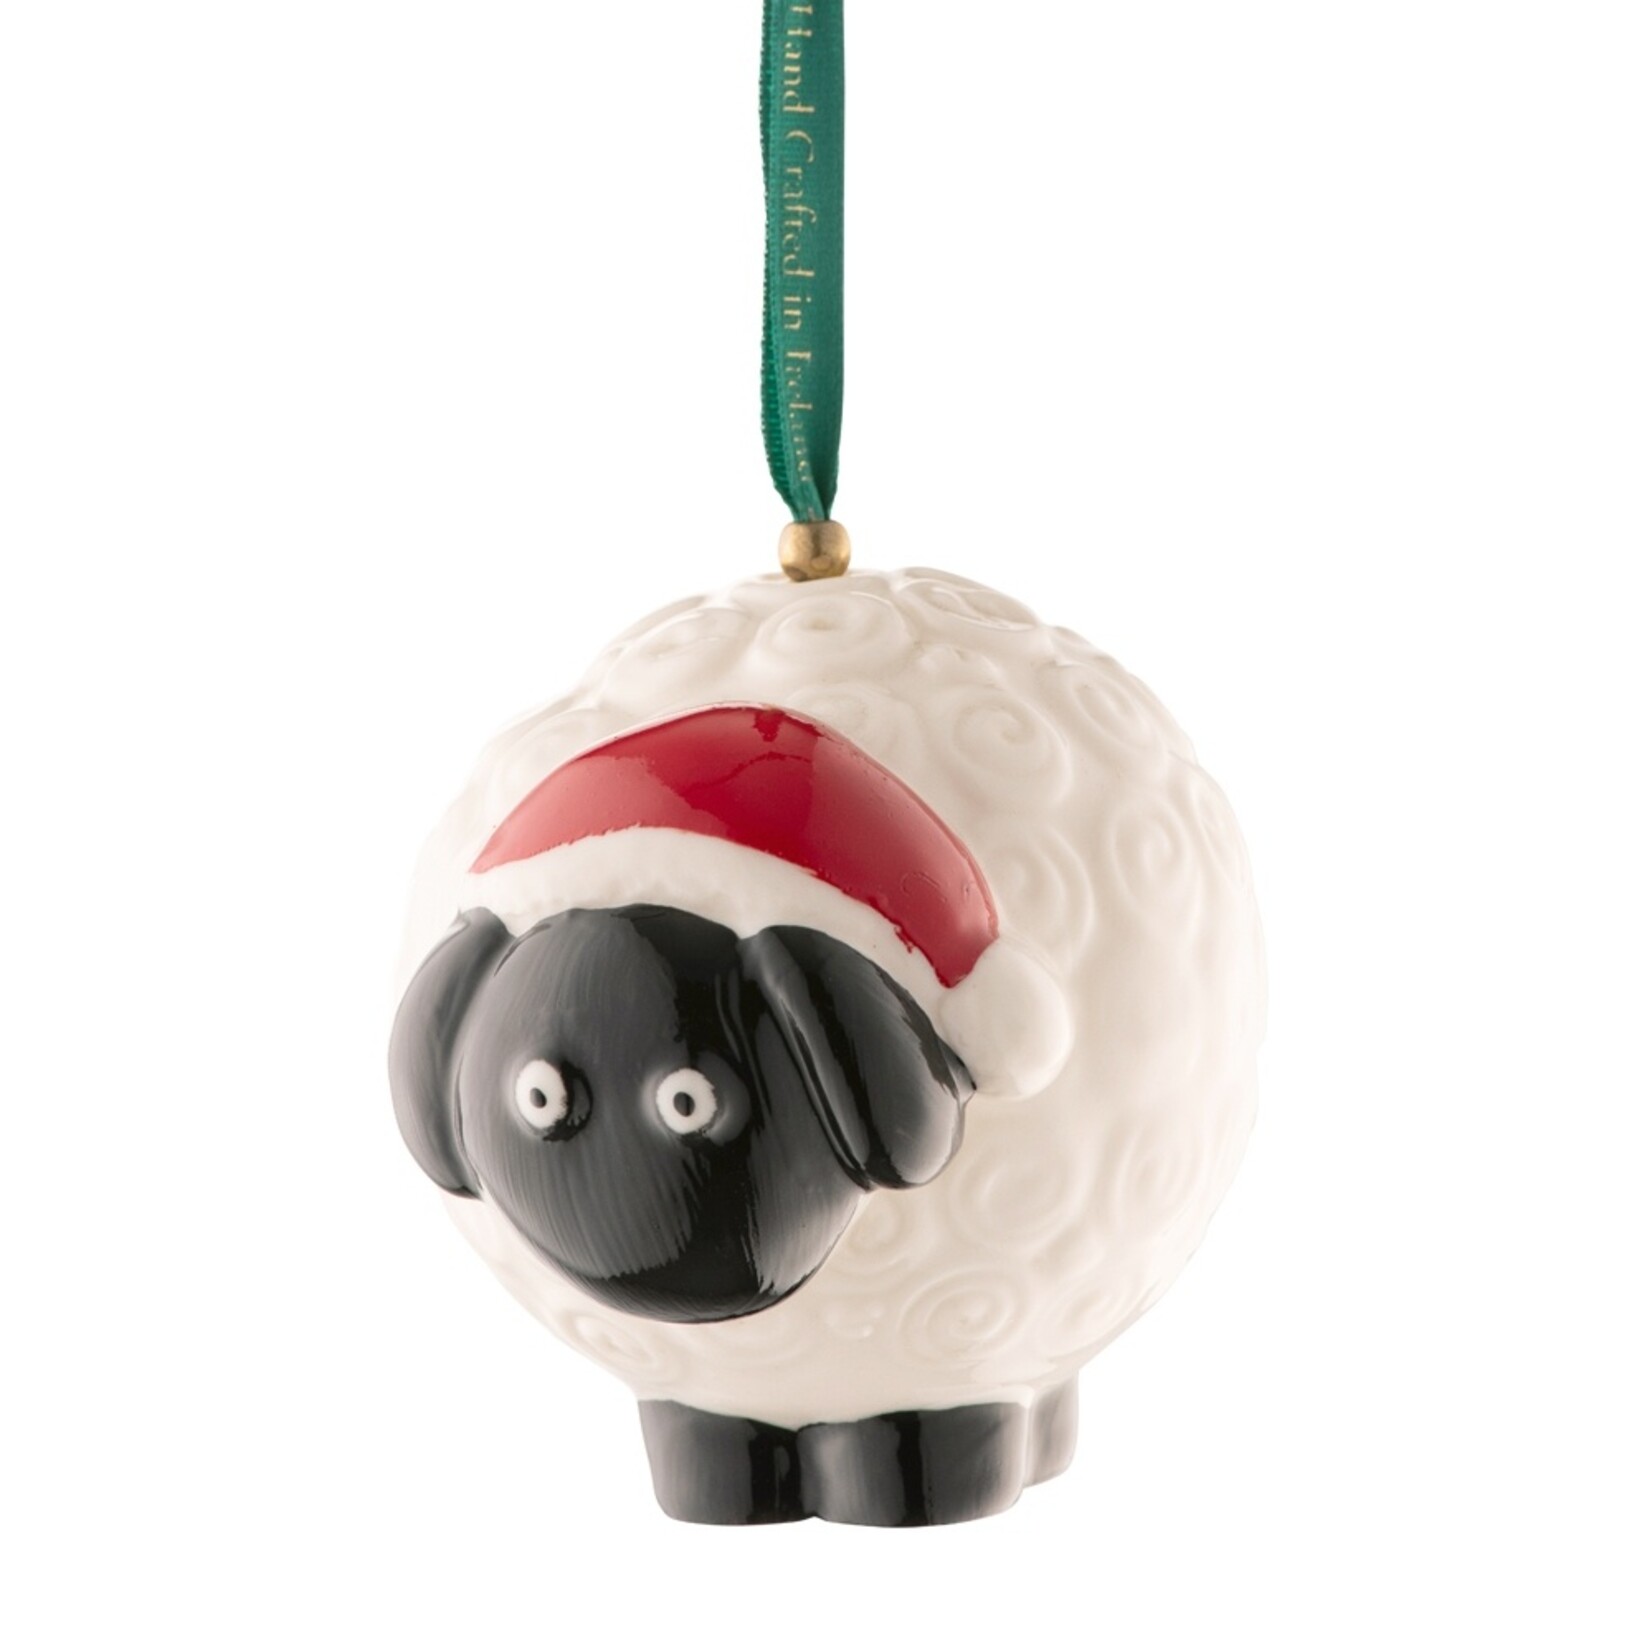 Belleek Sheep Ornament by Belleek